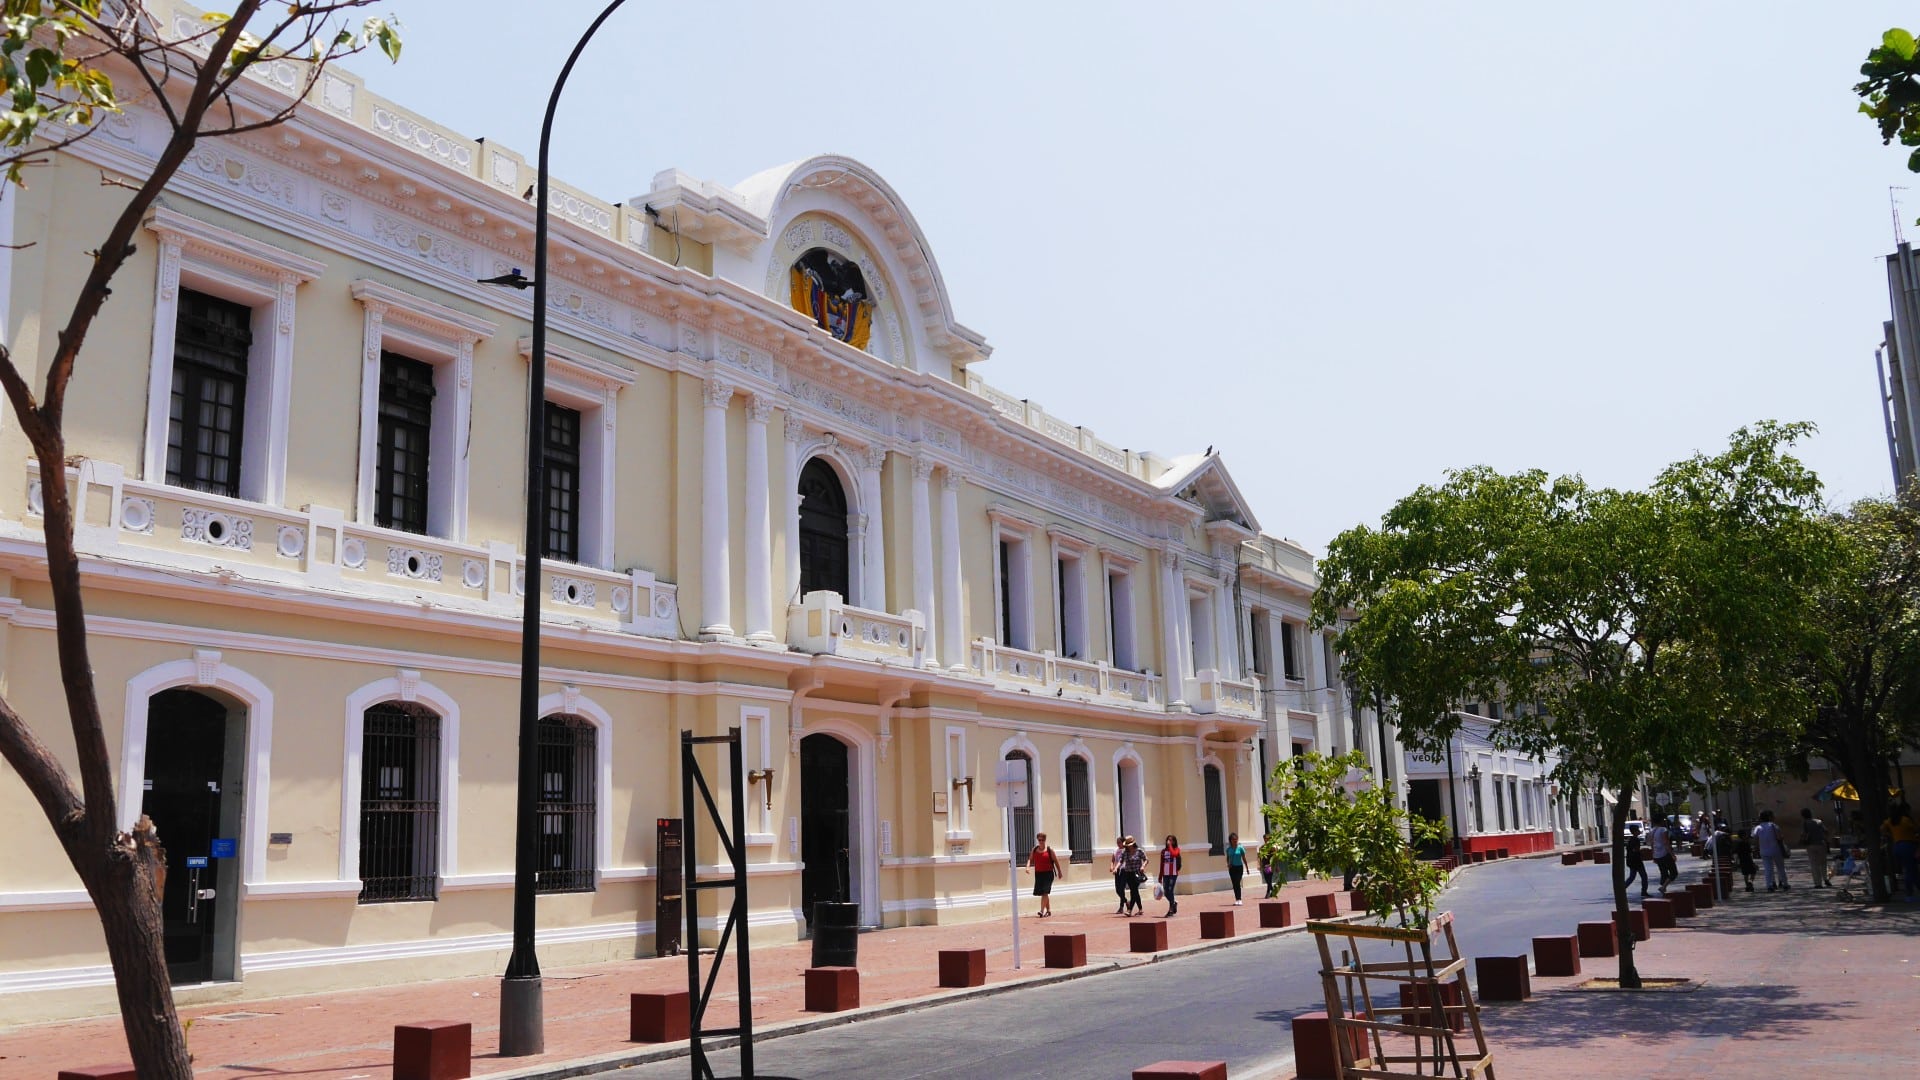 Il centro storico di Santa Marta è ricco di fascino coloniale e attrazioni storiche, ed è il luogo migliore per i turisti che vogliono immergersi nella cultura di questa città colombiana. Non lontano, Santa Marta Marina è apprezzata per i suoi hotel di lusso internazionali.